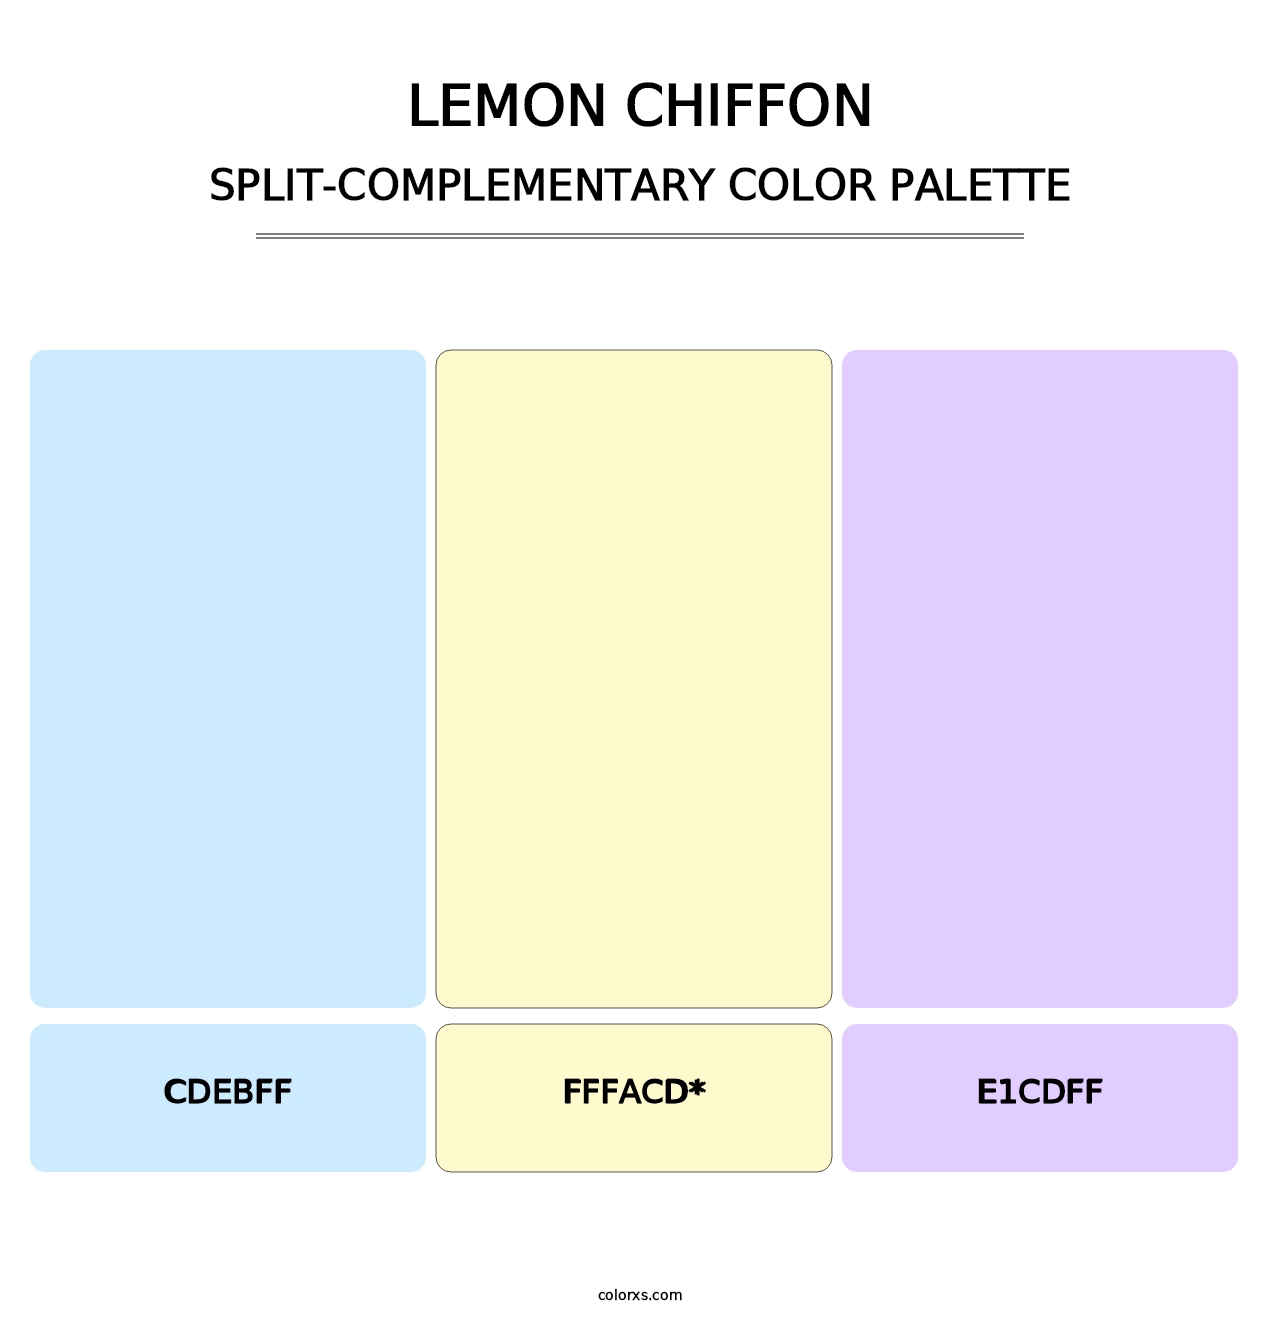 Lemon Chiffon - Split-Complementary Color Palette